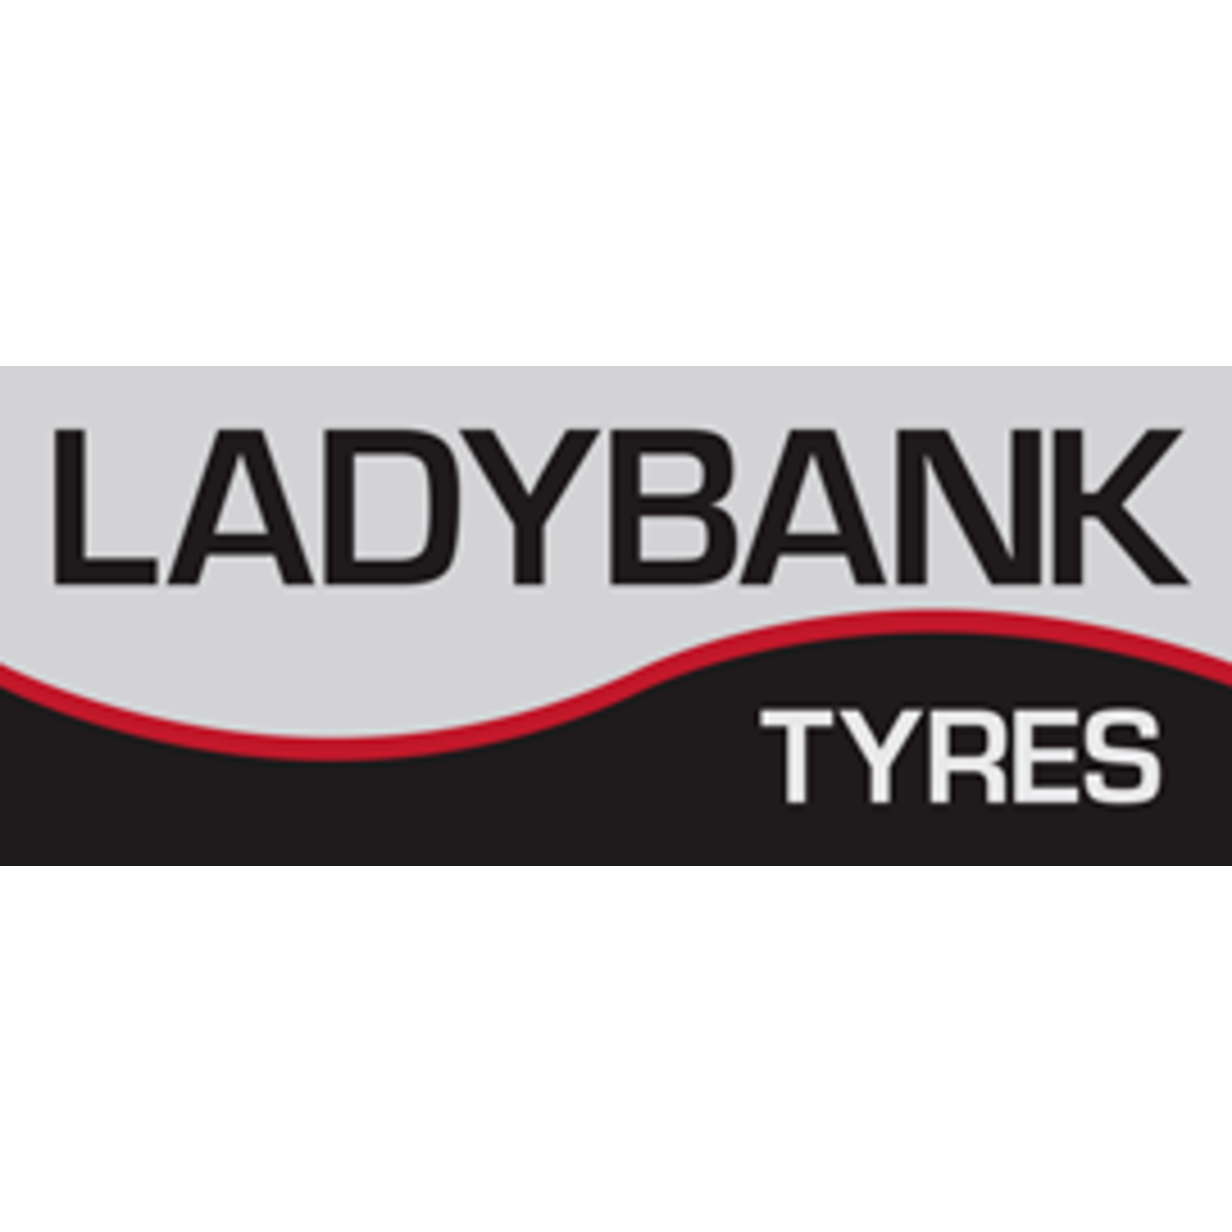 Ladybank Tyres LTD Ladybank 01337 830932